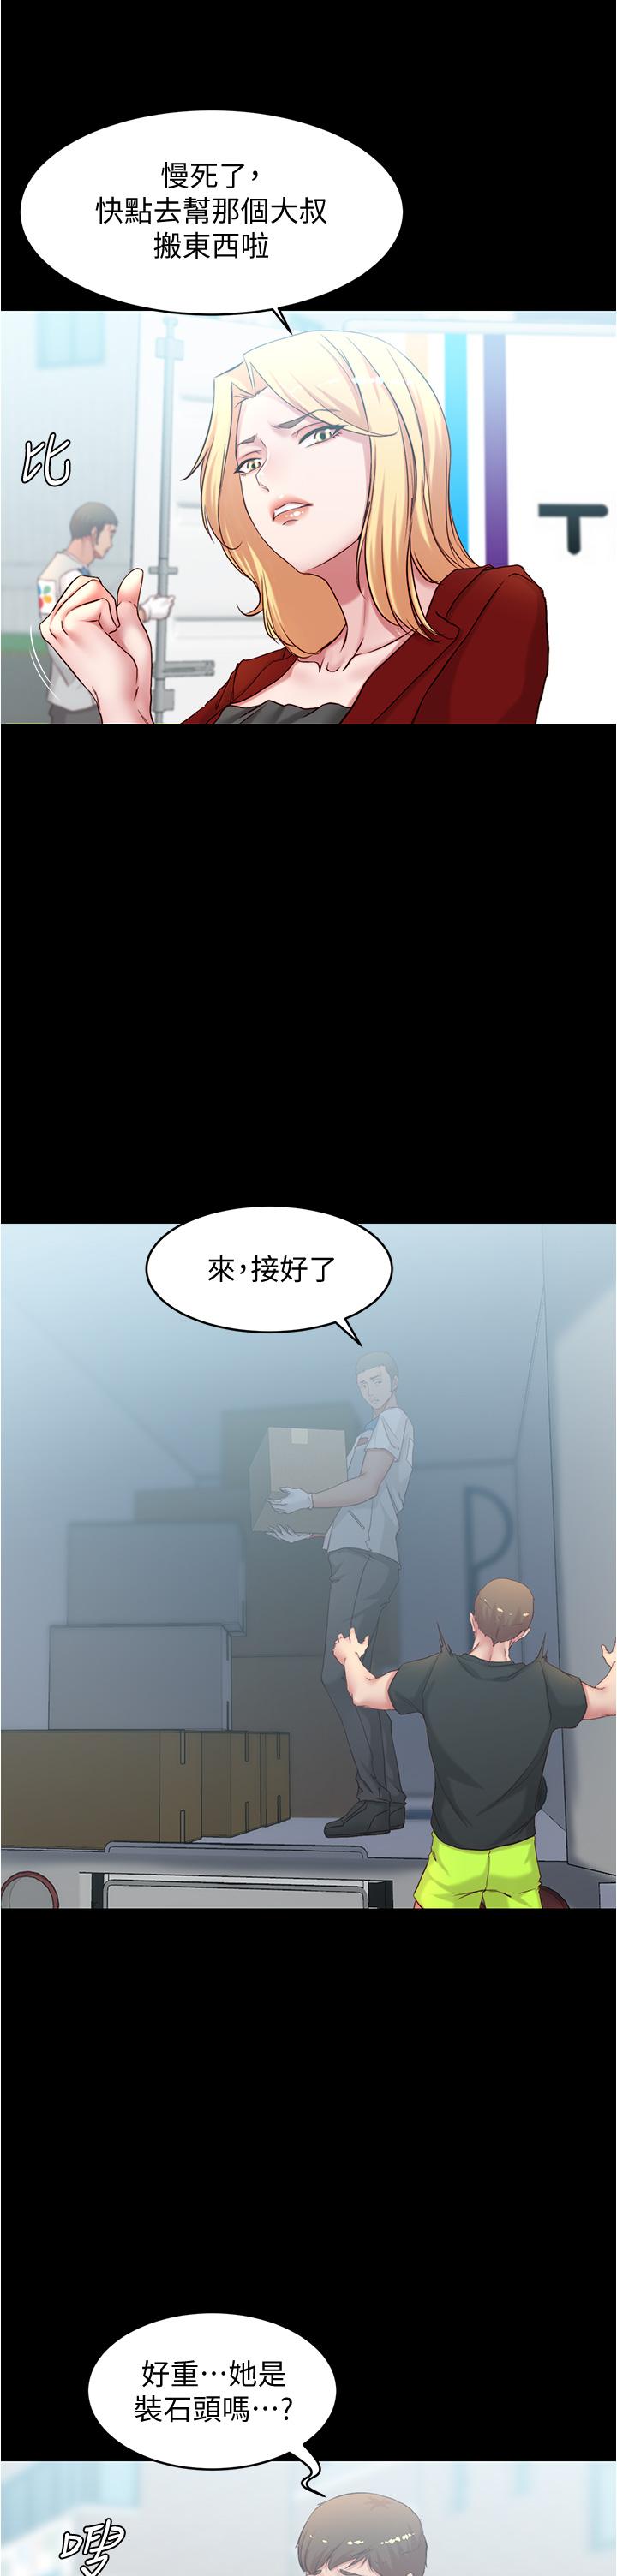 小褲褲筆記漫画 免费阅读 第37话-开始跟张惠桦同居 30.jpg